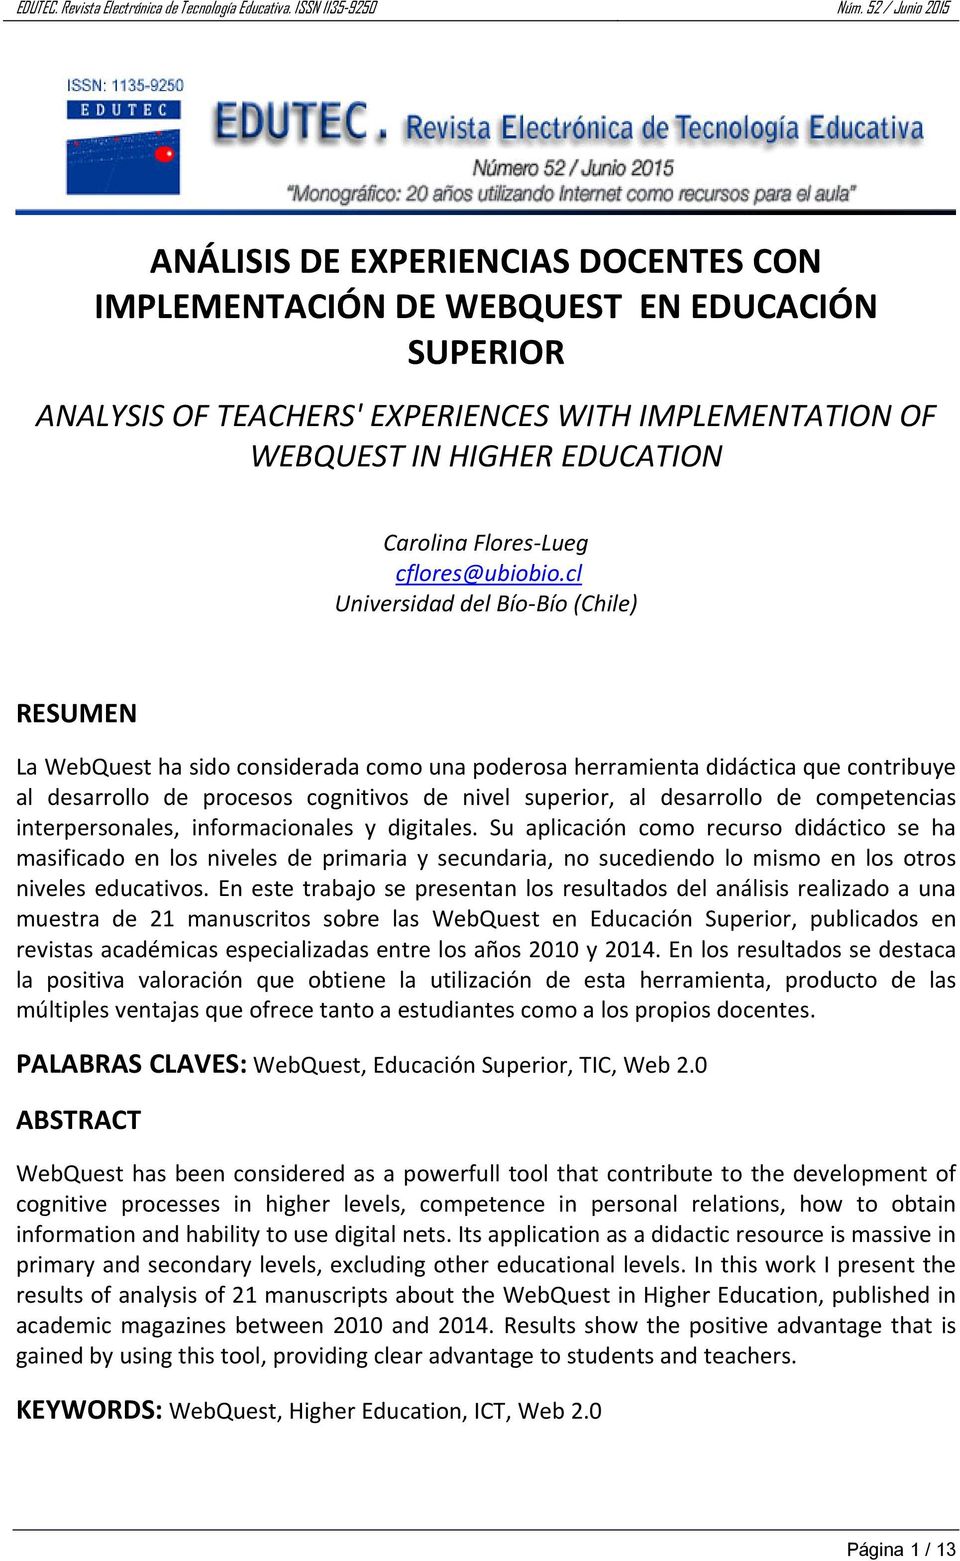 cl Universidad del Bío Bío (Chile) RESUMEN La WebQuest ha sido considerada como una poderosa herramienta didáctica que contribuye al desarrollo de procesos cognitivos de nivel superior, al desarrollo